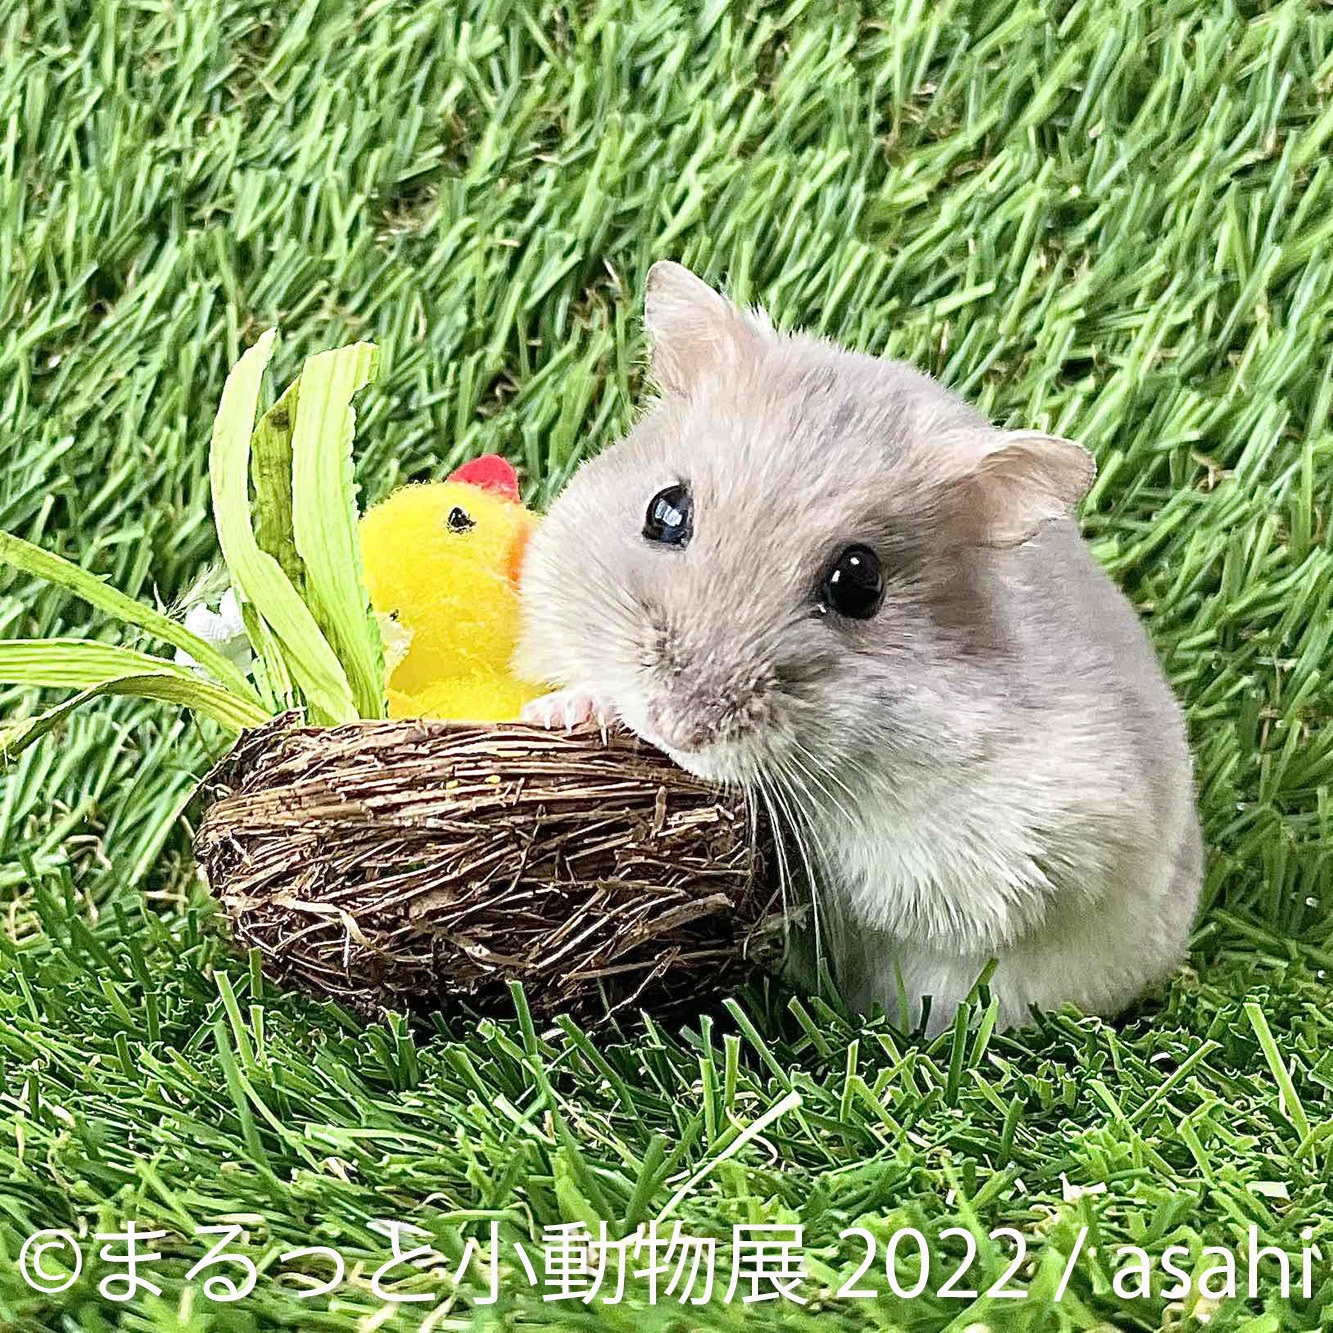 ハムスターやハリネズミなどが主役の写真 物販展 まるっと小動物展 名古屋と東京で開催 動物のリアルを伝えるwebメディア Reanimal